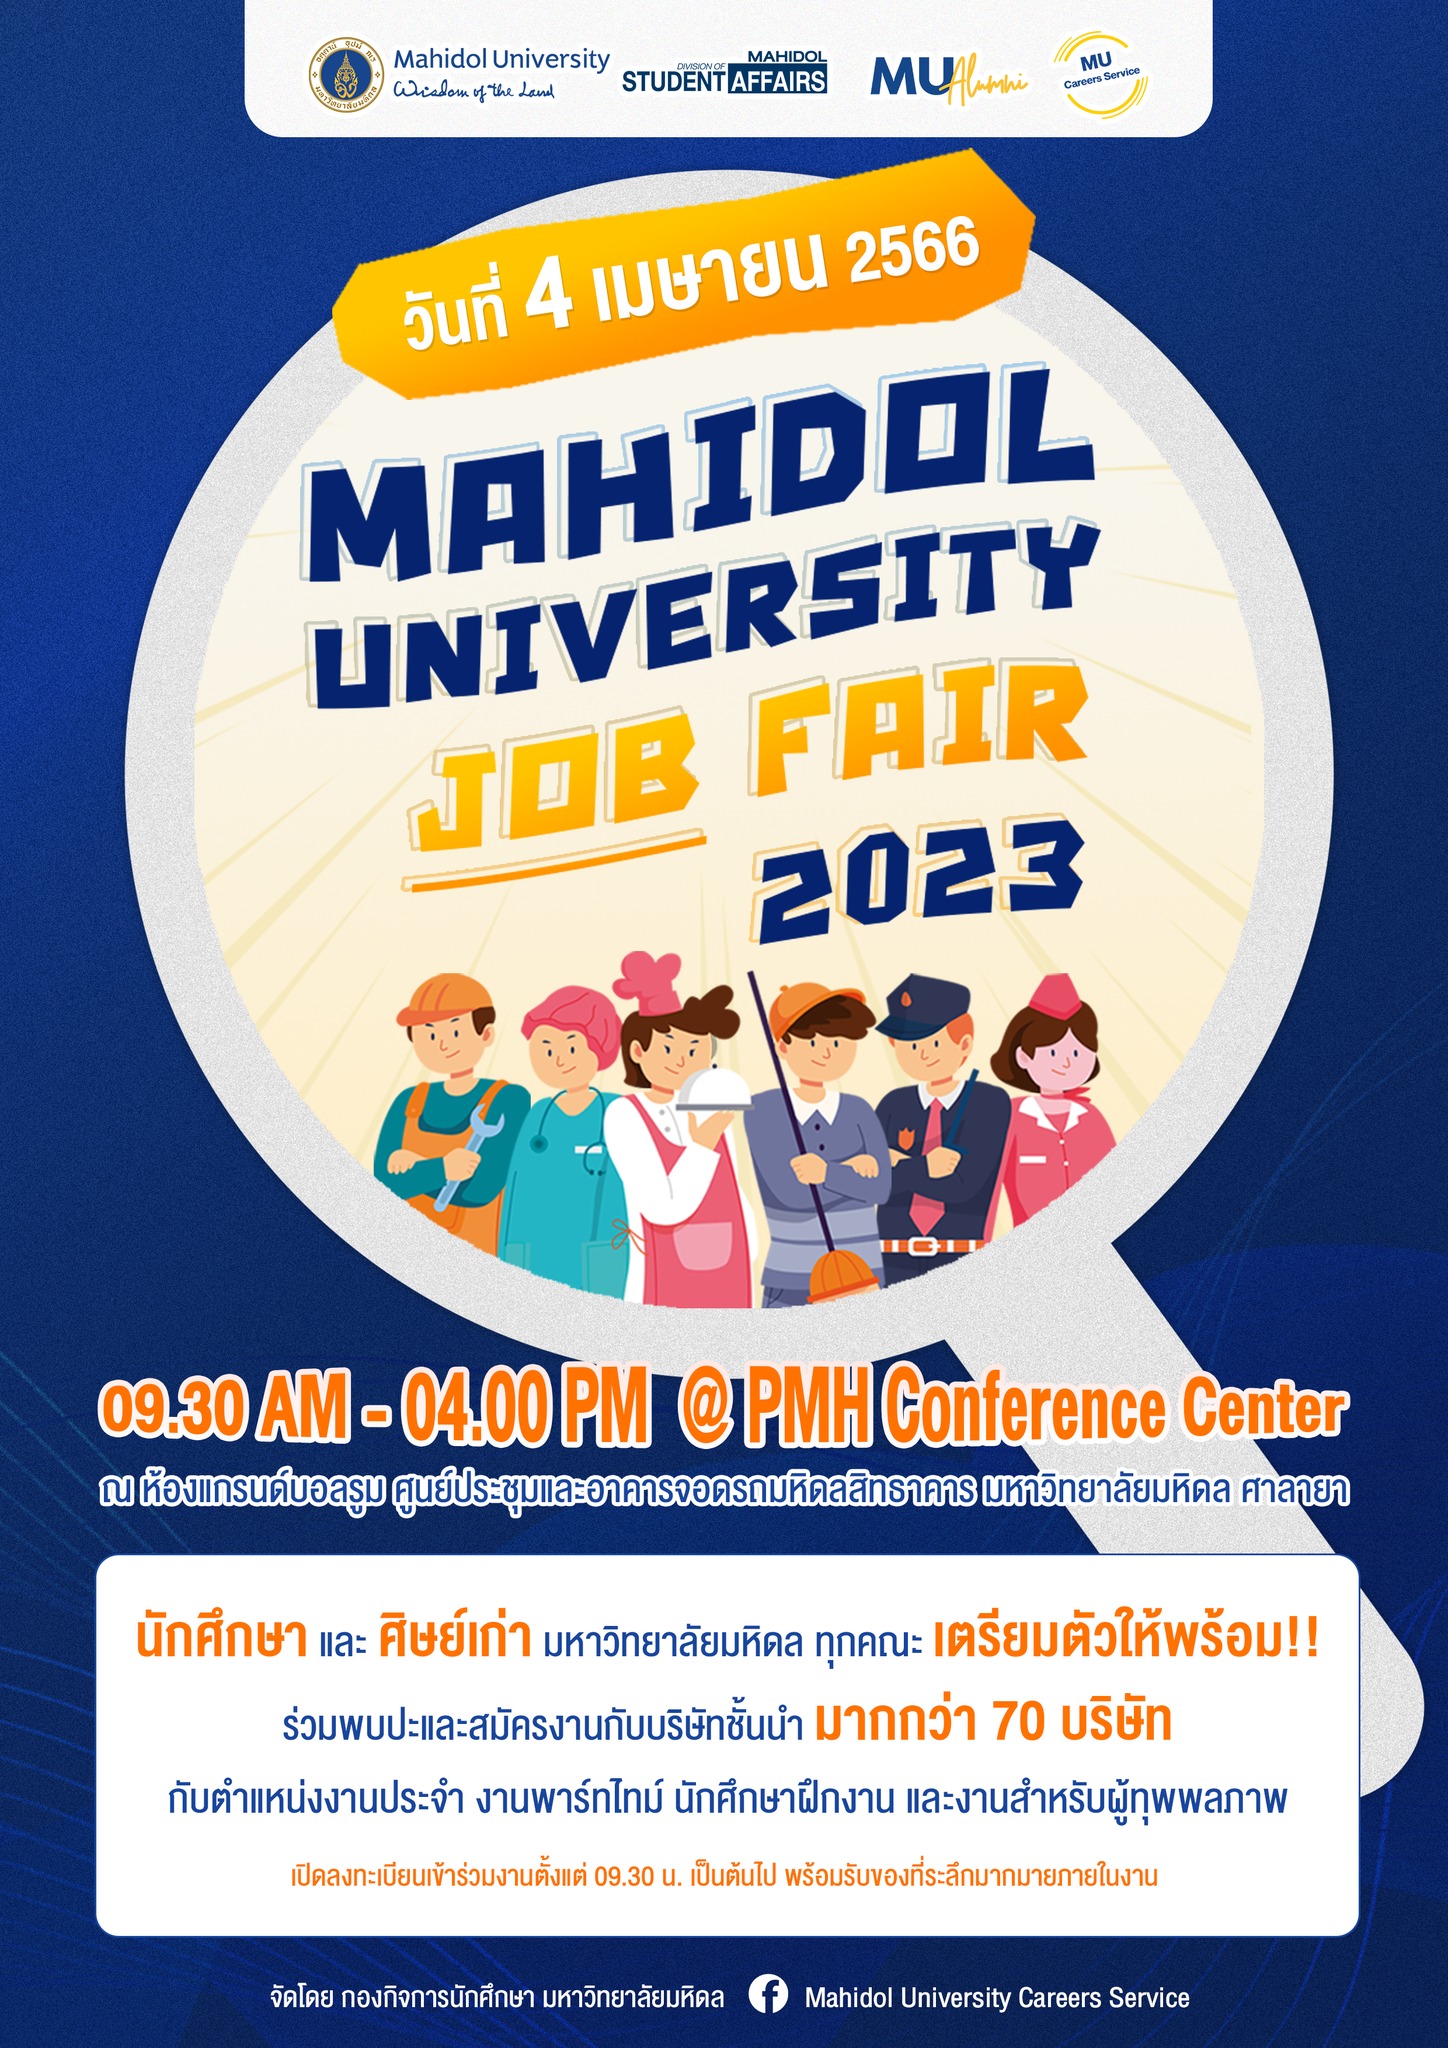 Mahidol University Job Fair 2023